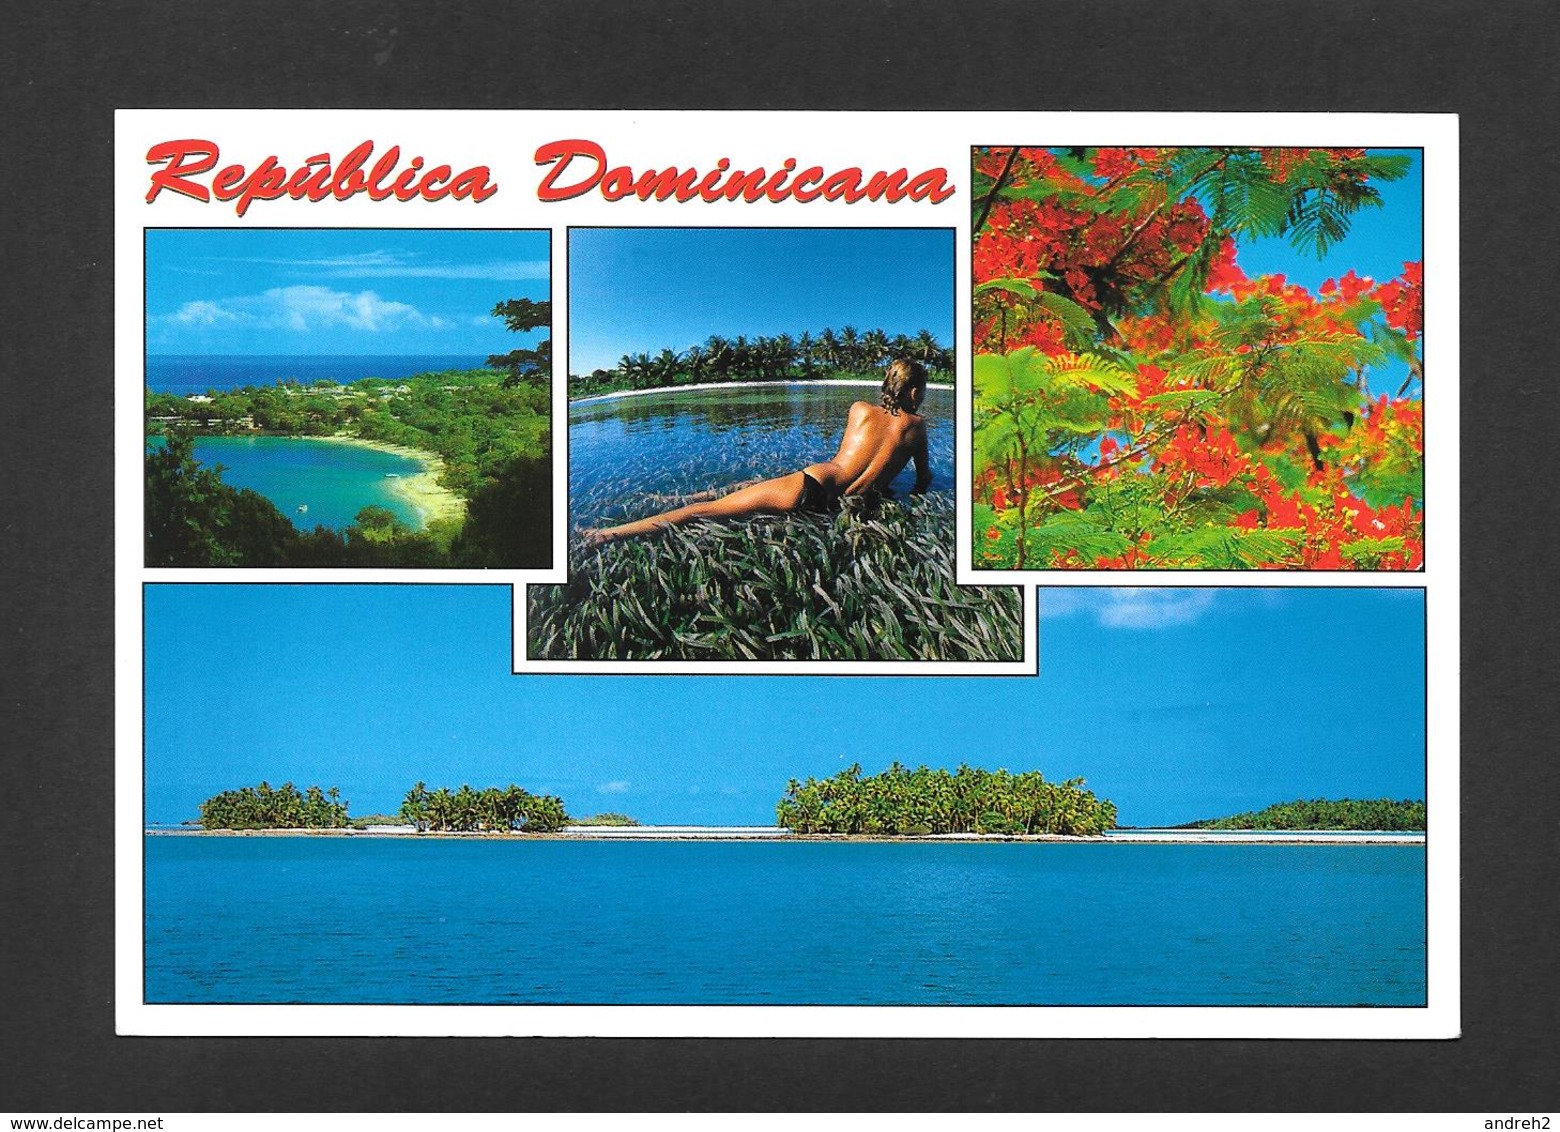 REPUBLICA DOMONICANA - RÉPUBLIQUE DOMINICAINE - JOLIE PIN UPS - PHOTO BY CARIBE LINE - Dominicaine (République)